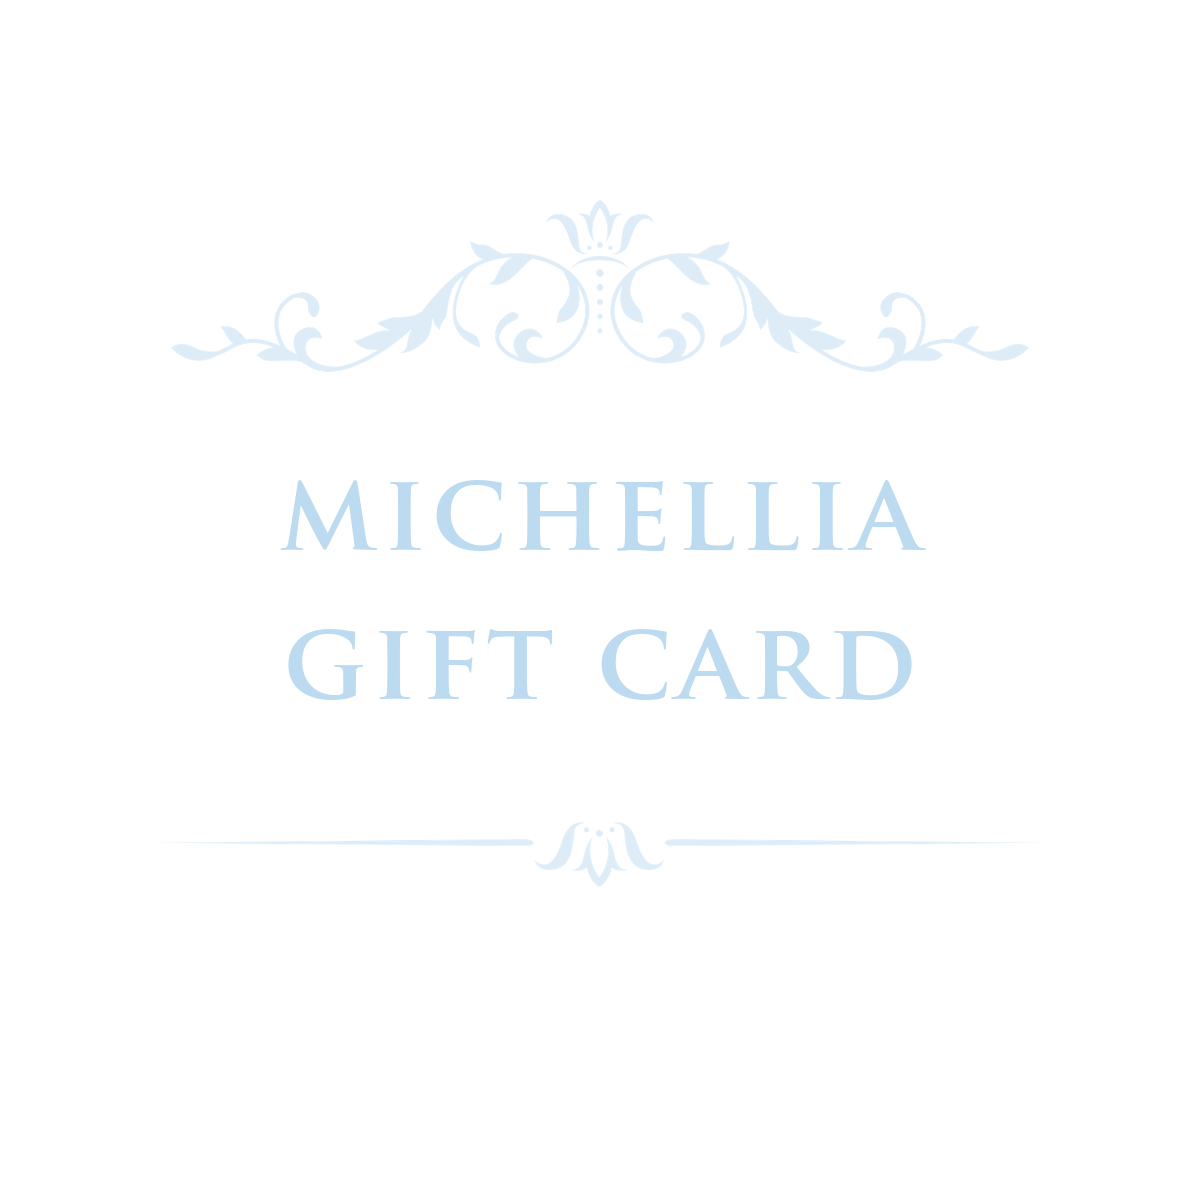 [Michellia Gift Card] Michellia Gift Card Gift Card michelliafinejewelry   